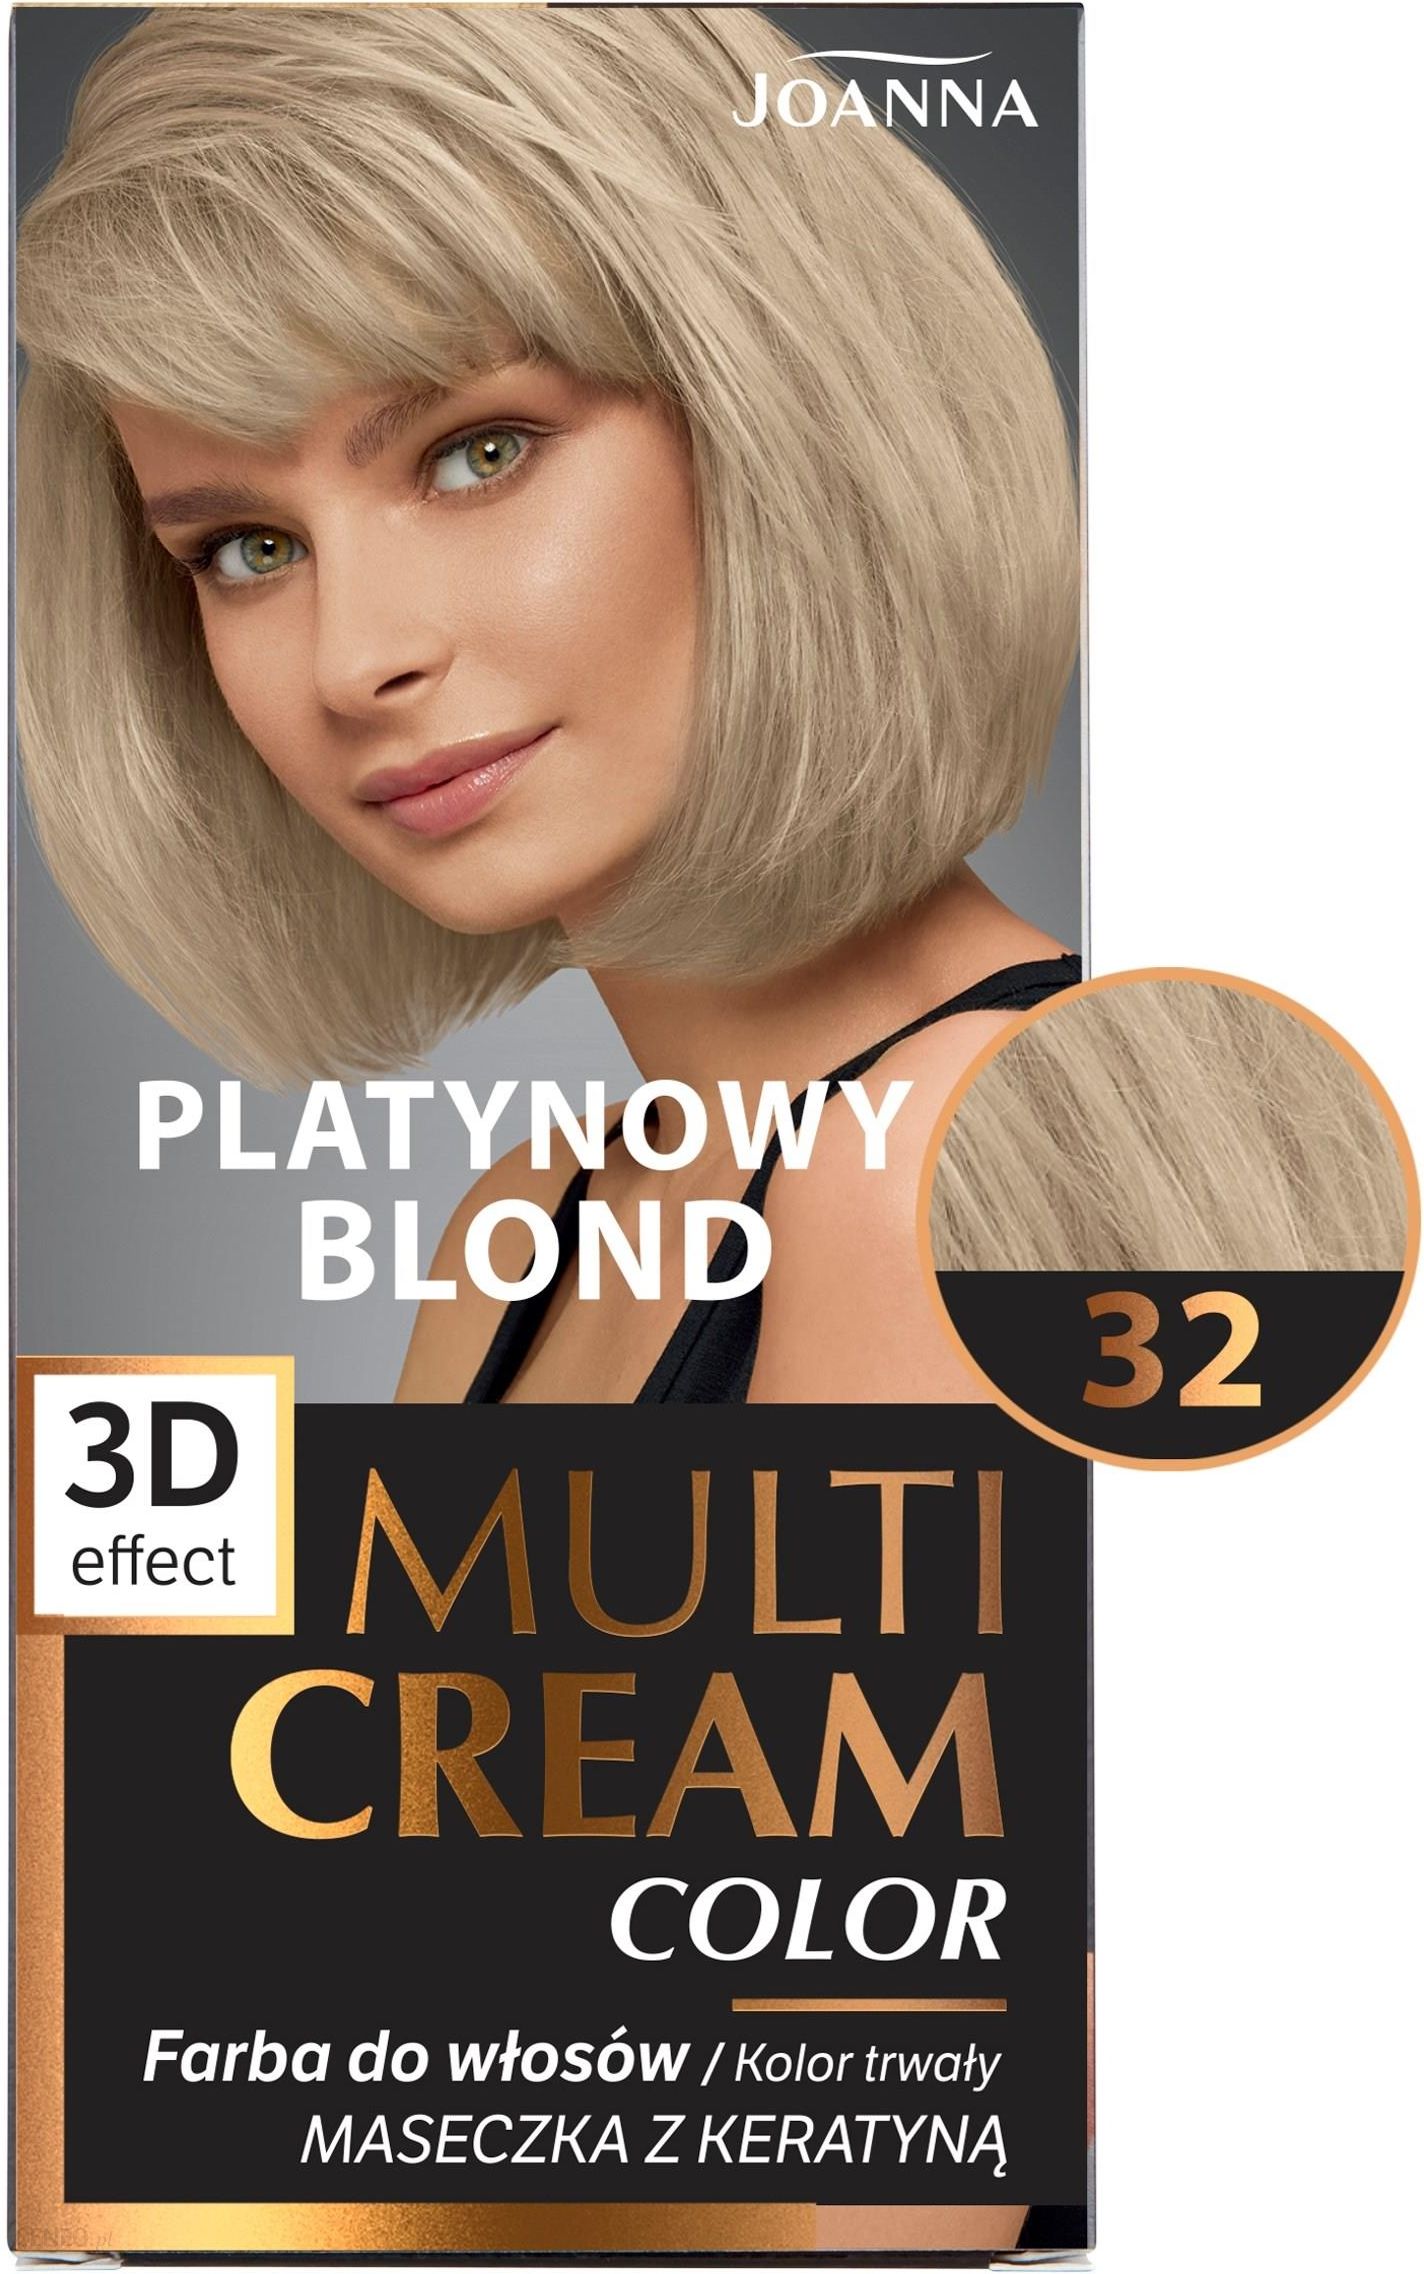 szampon joanna platynowy blond rezultaty